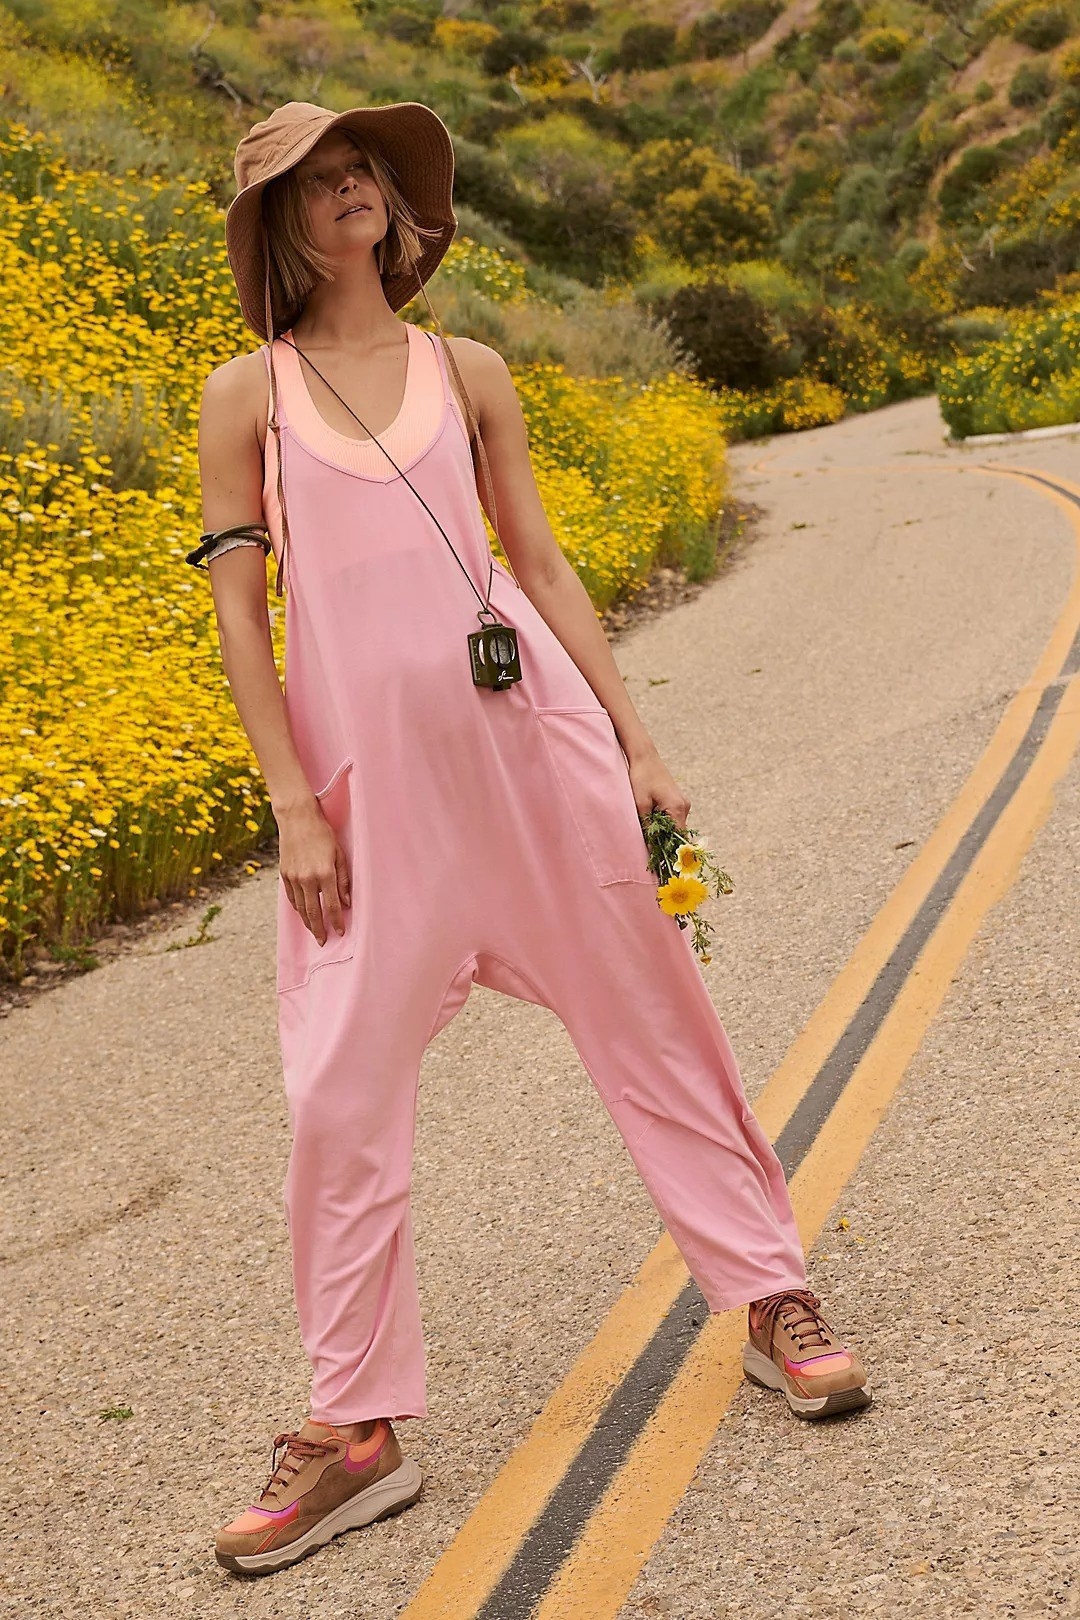 Model wearing pink onesie